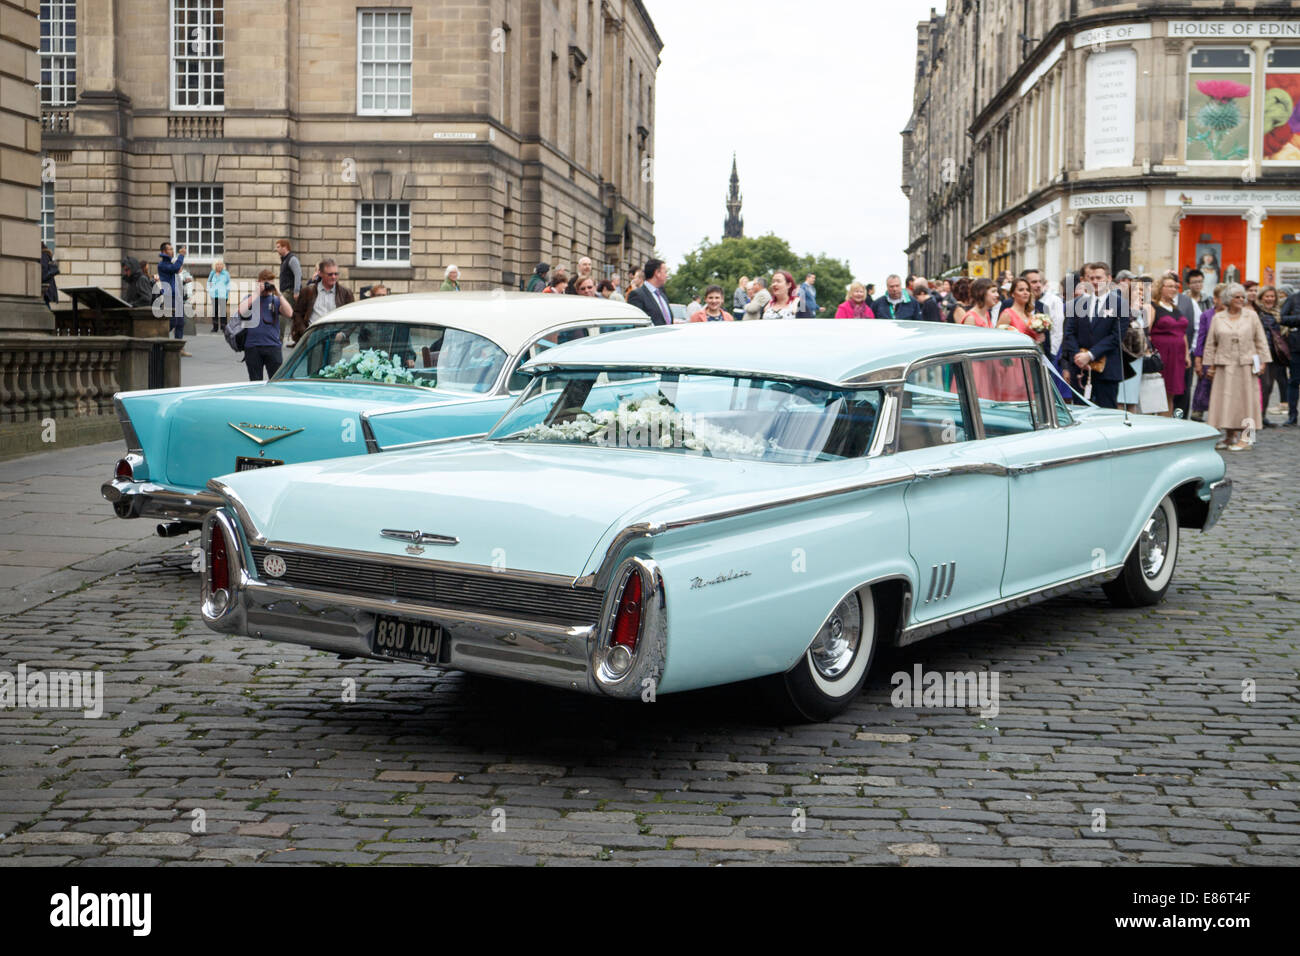 1960's Mercury wedding car next to 1950's Chevrolet. Edinburgh Old Town. Stock Photo